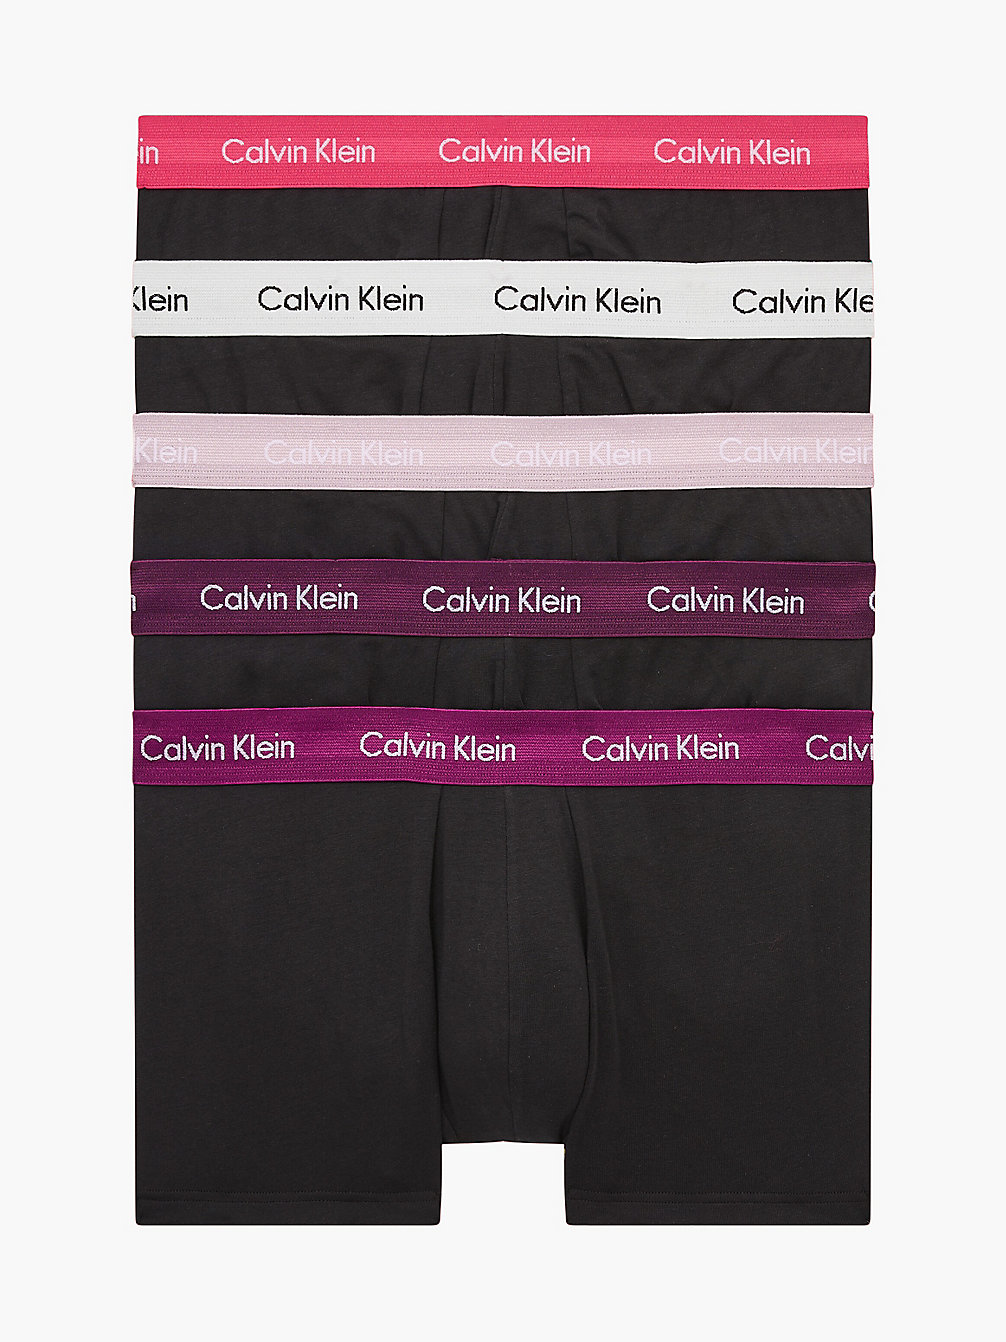 B-RHN, NRV, BR WT, PNK SPL, BRY MAR 5er-Pack Hüft-Shorts undefined Herren Calvin Klein